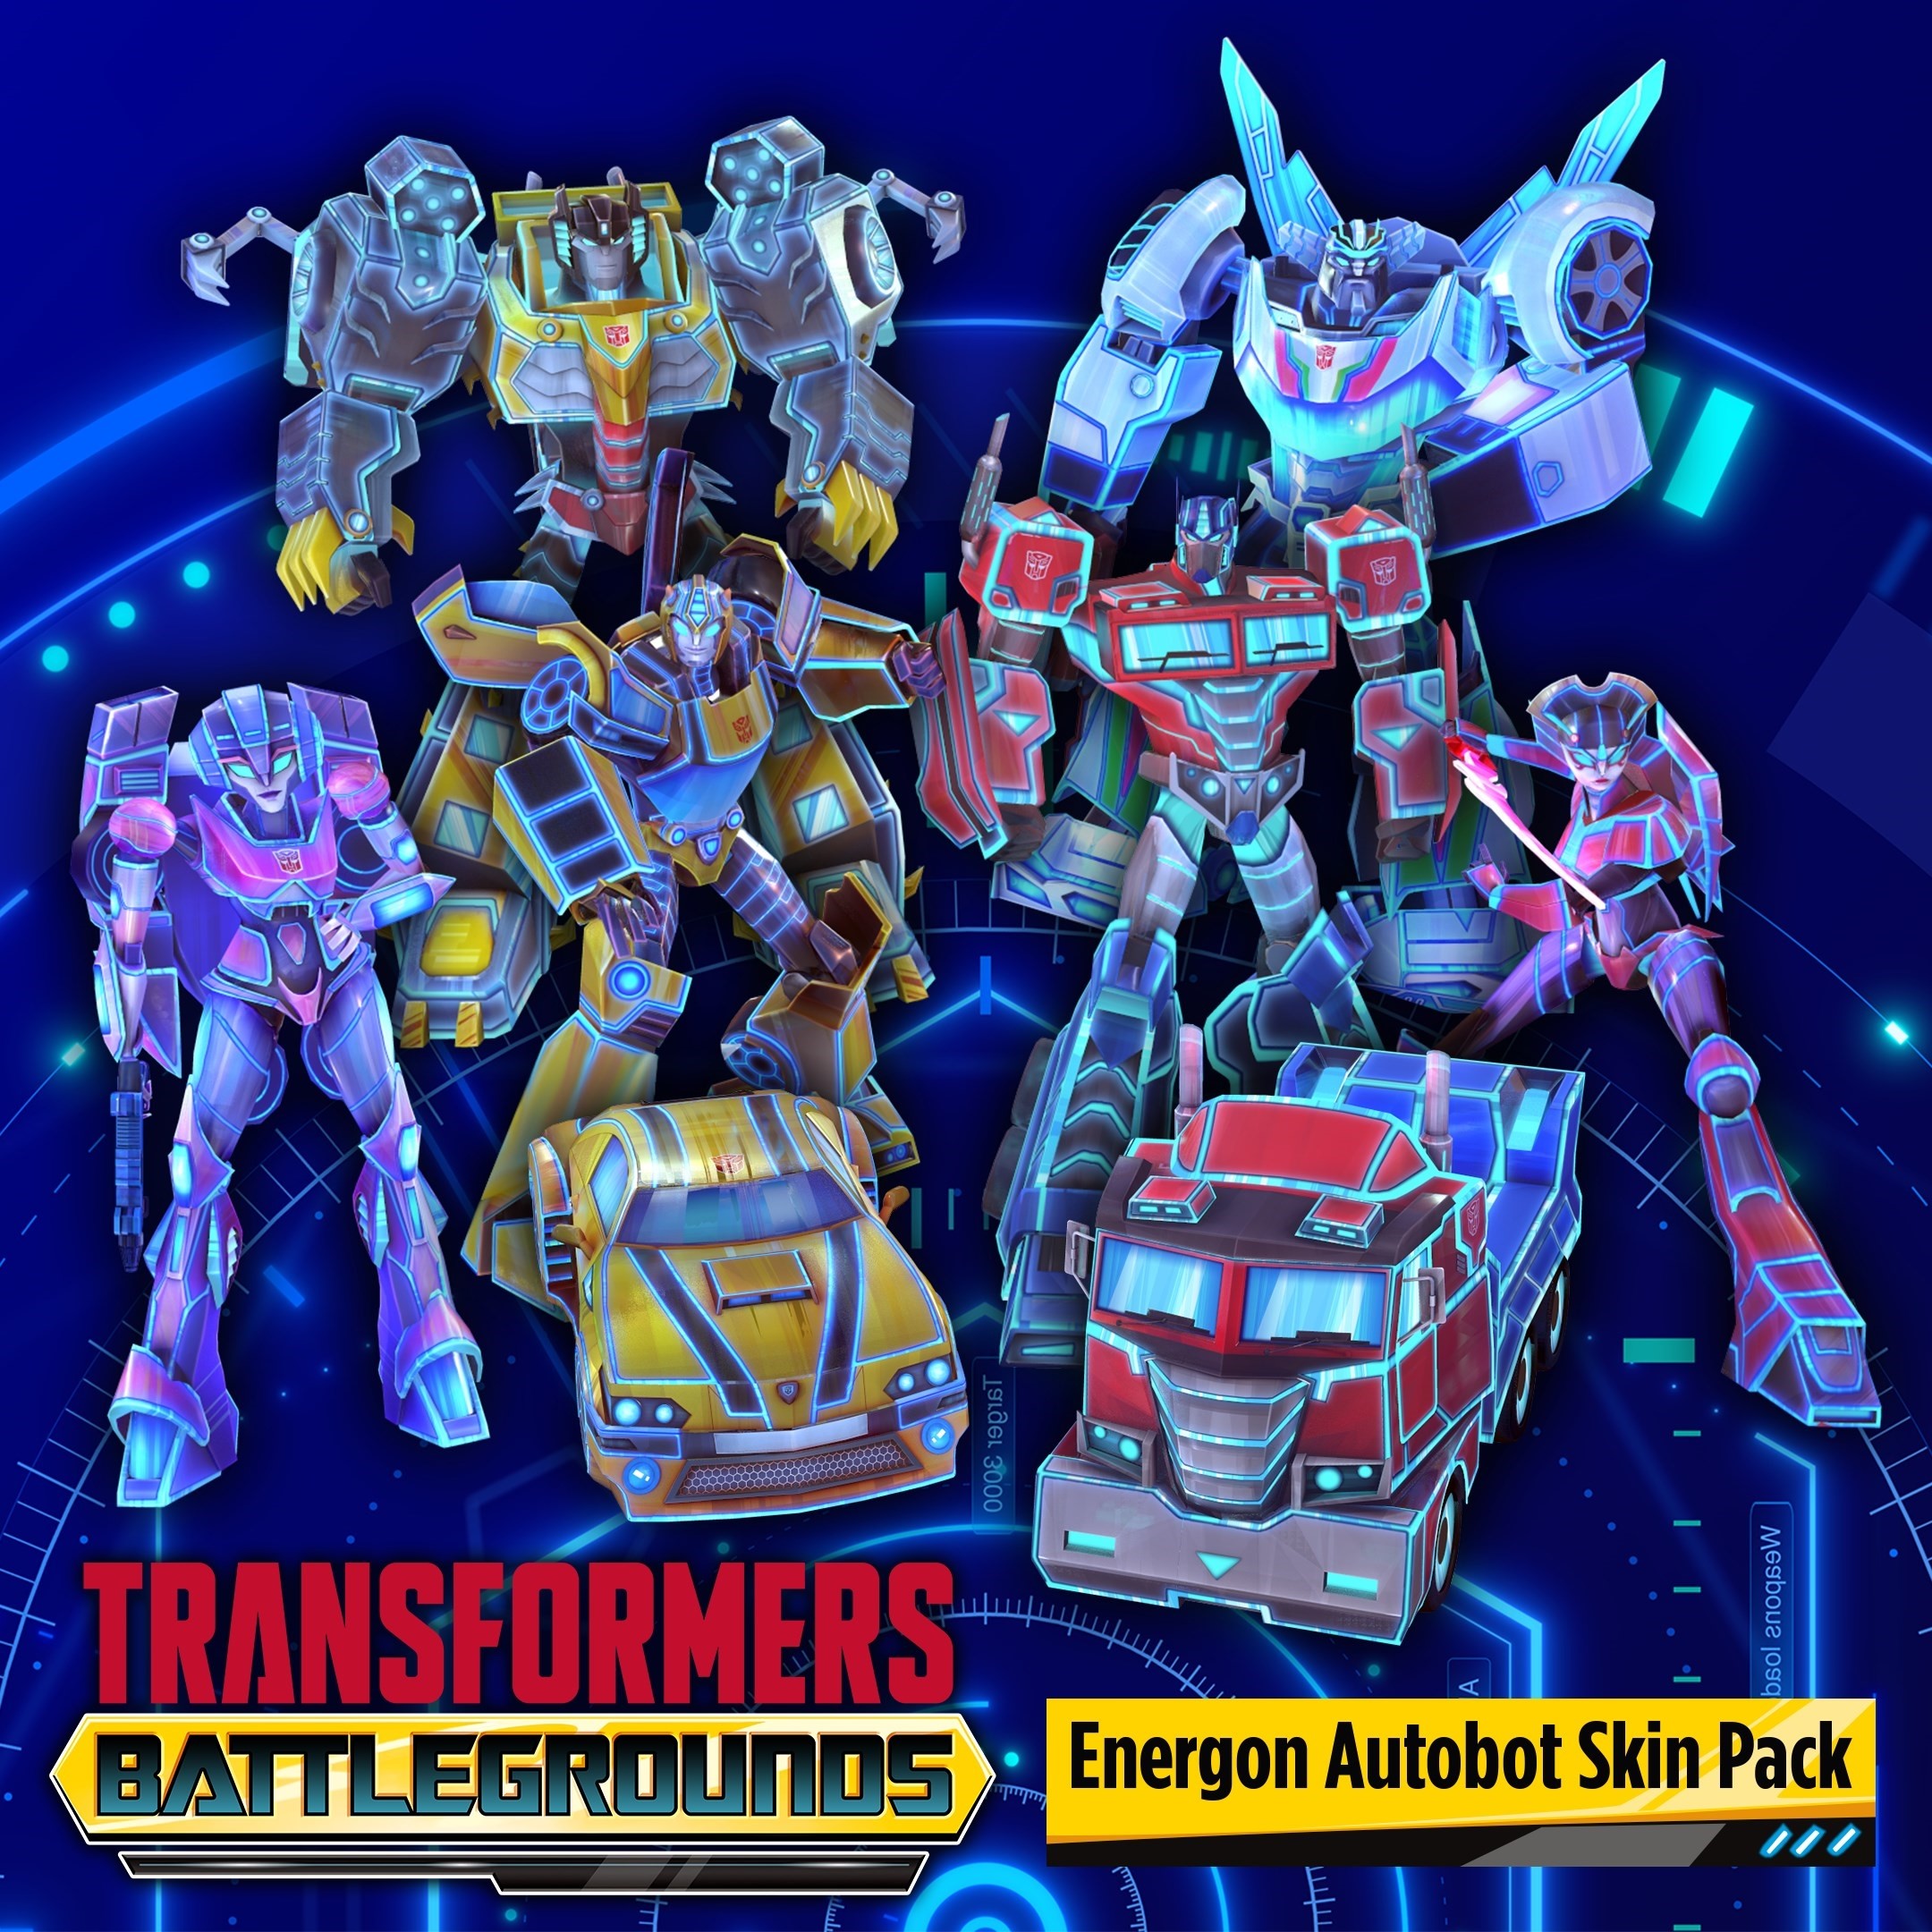 Transformers battlegrounds. Transformers Battlegrounds игра. Transformers Battlegrounds обложка. Игра Transformers Battlegrounds для ps4. Transformers: Battlegrounds персонажи.